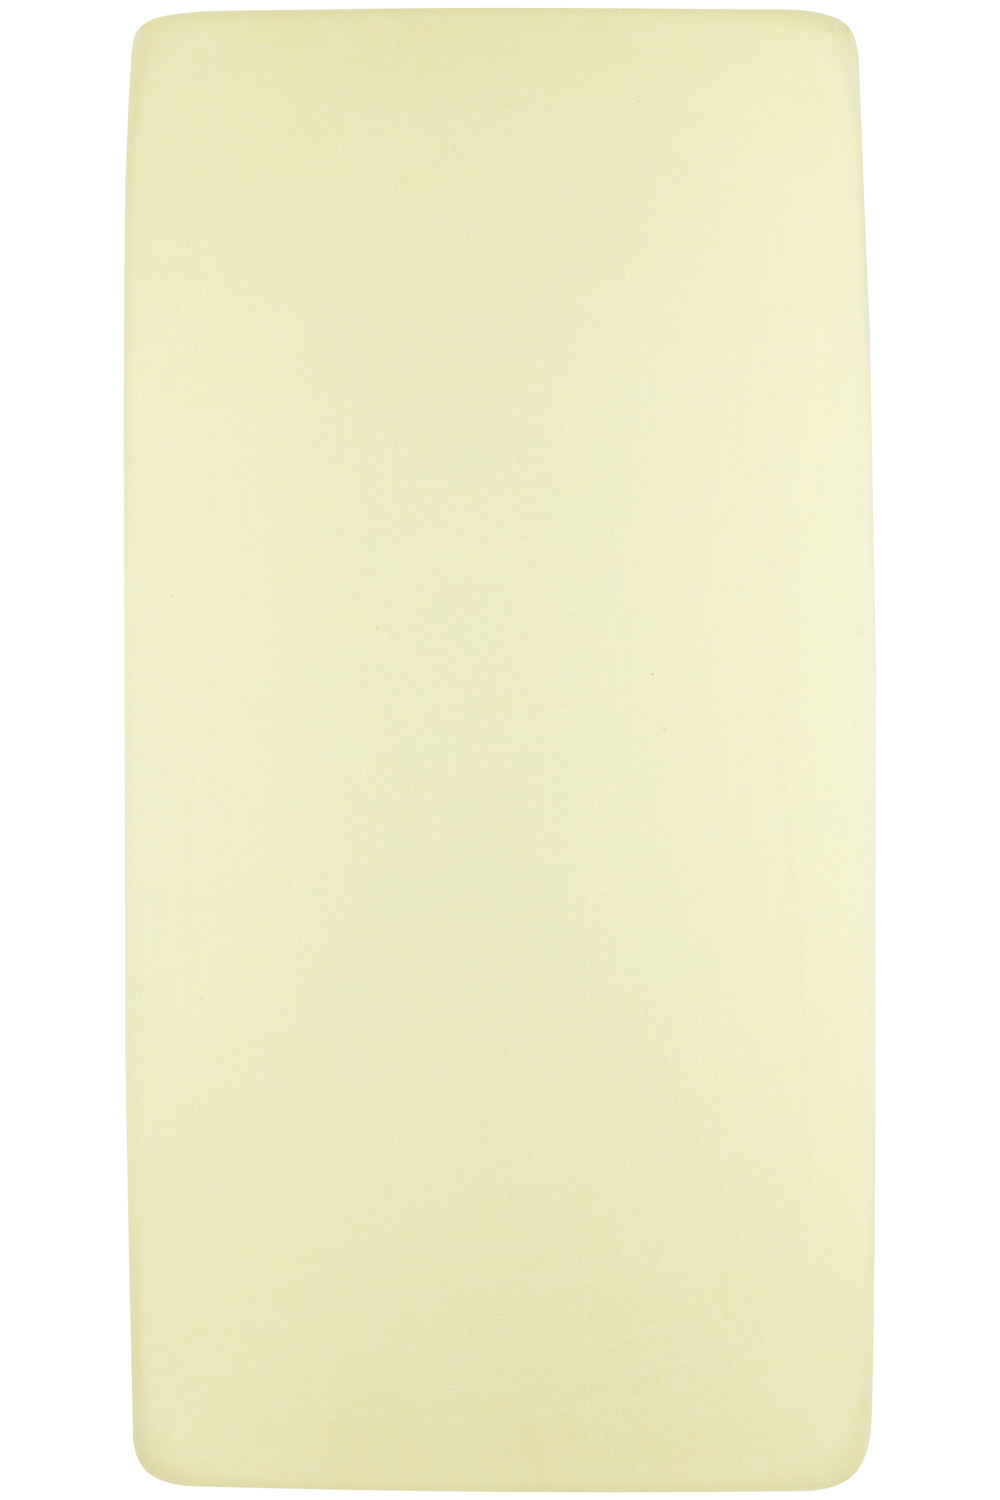 Jersey Hoeslaken Juniorbed - Soft Yellow - 70x140/150cm